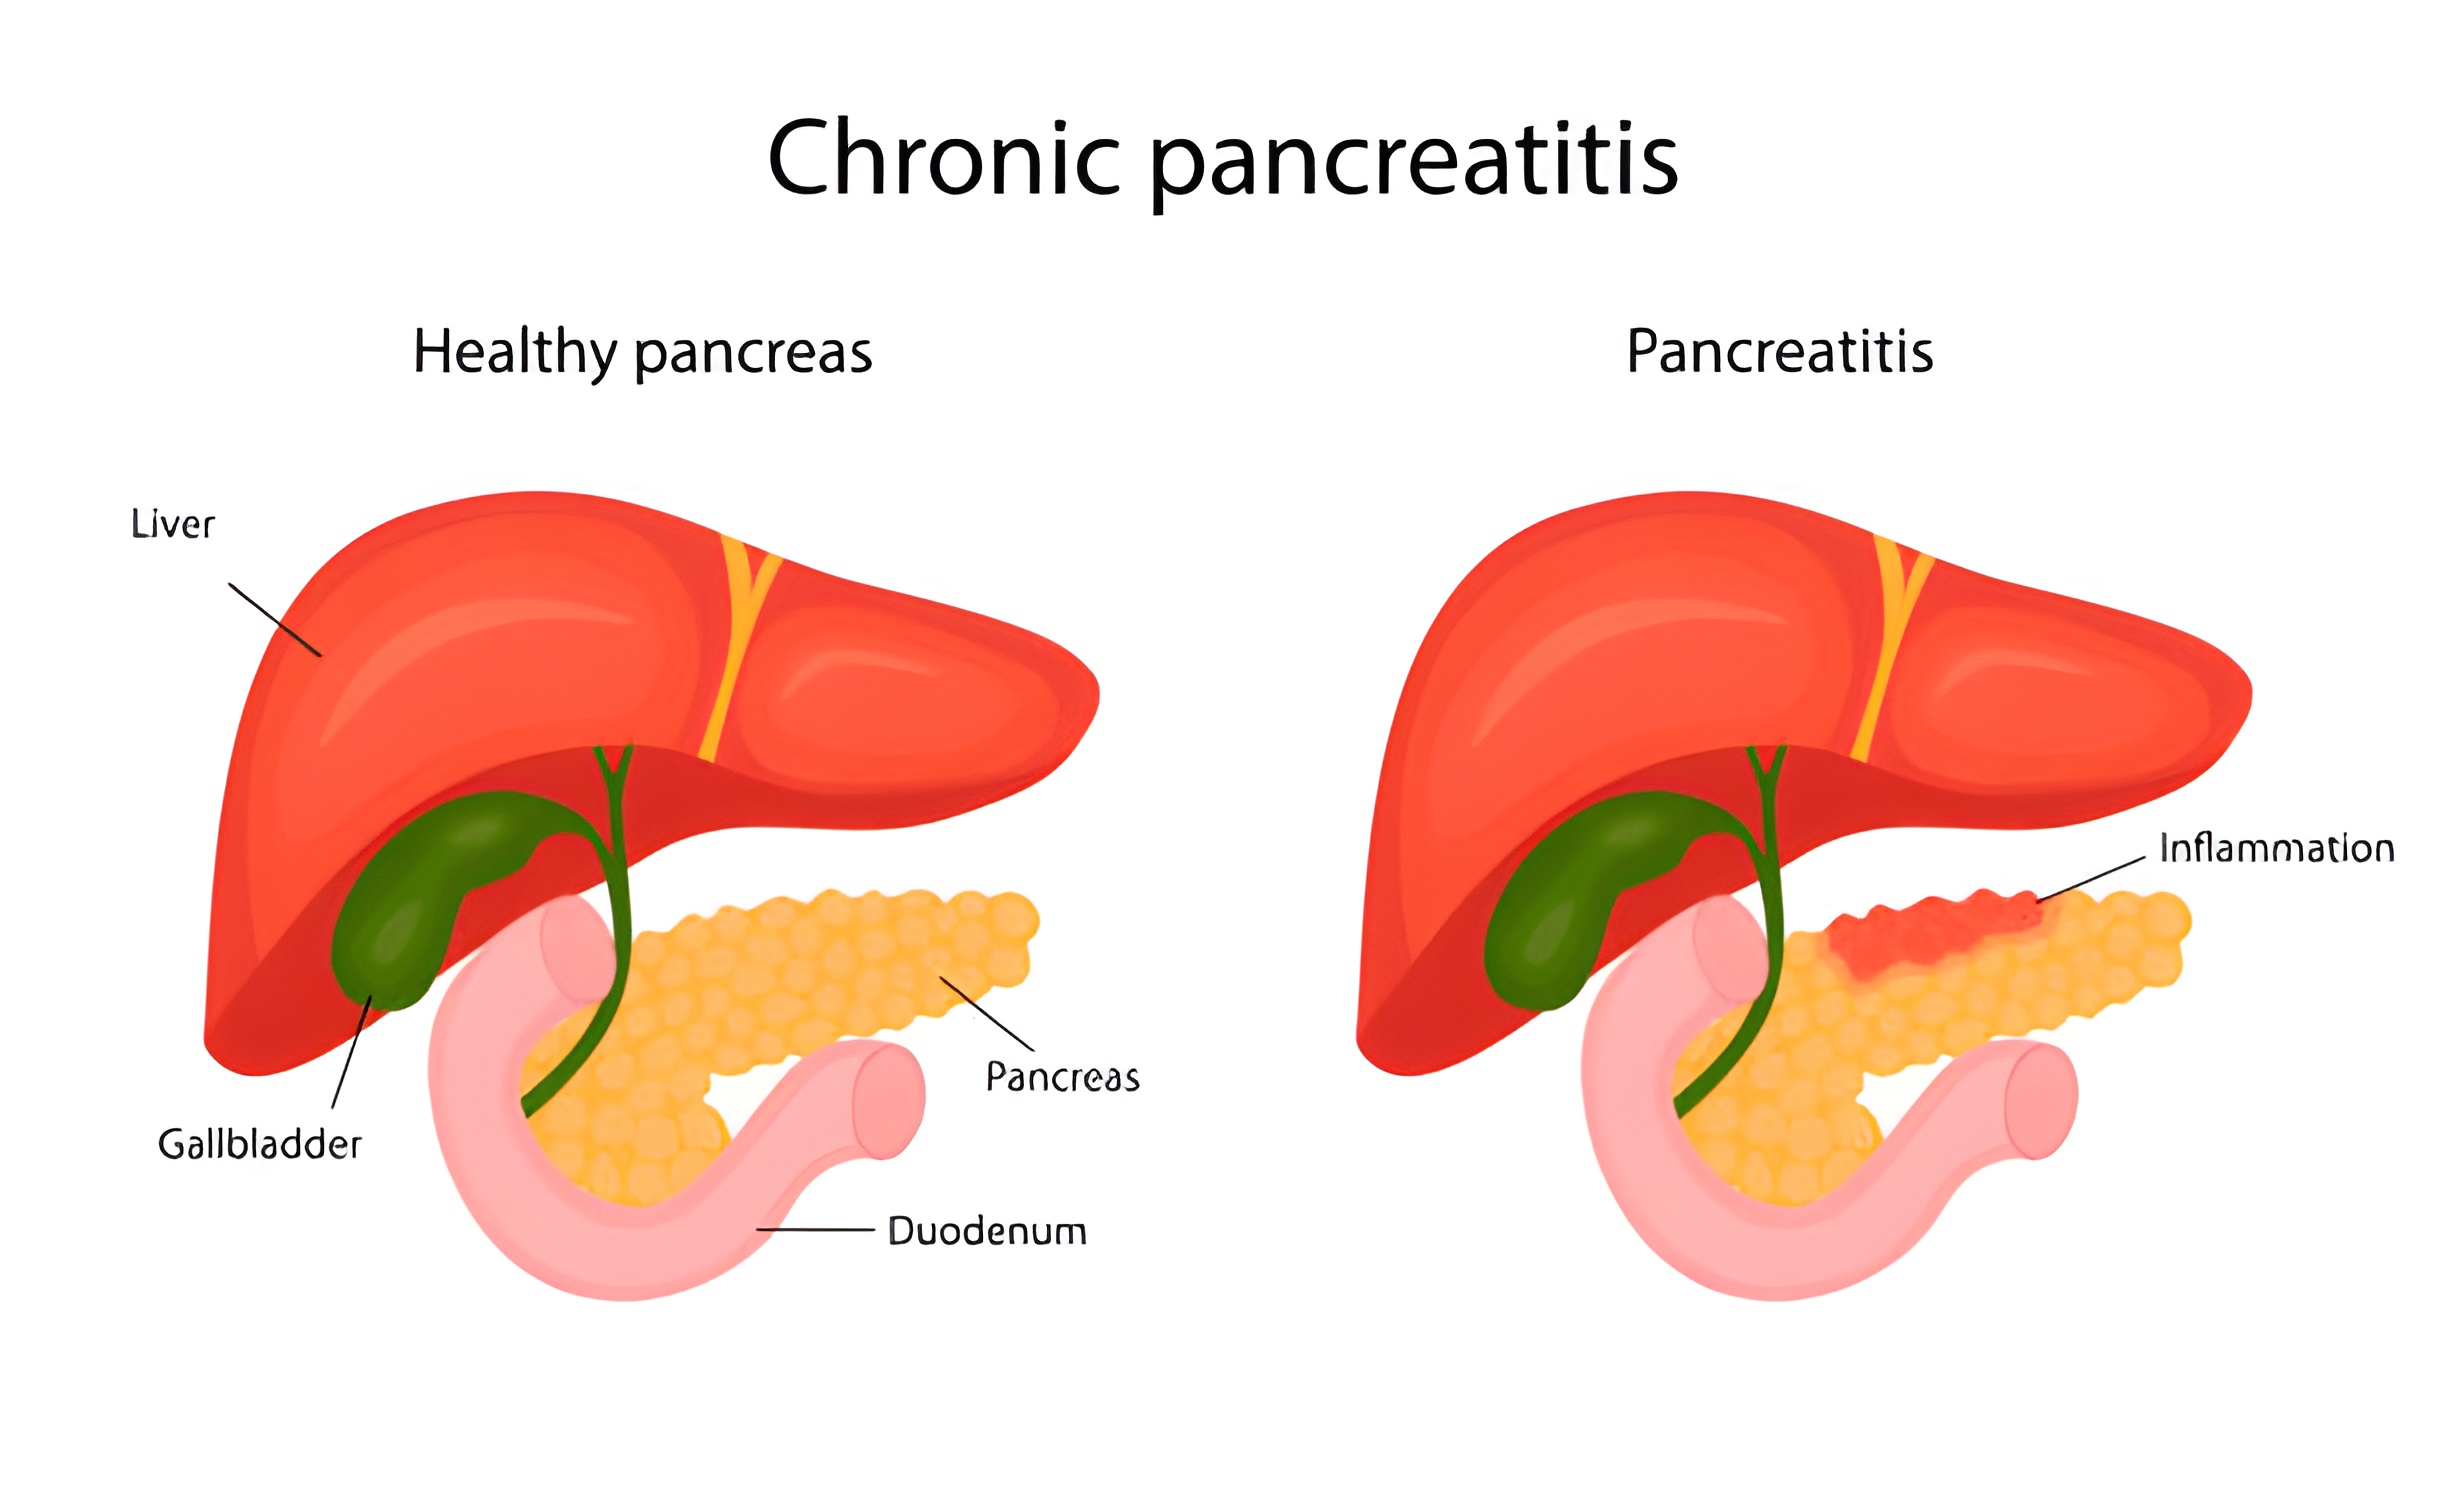  Каковы симптомы хронического панкреатита?